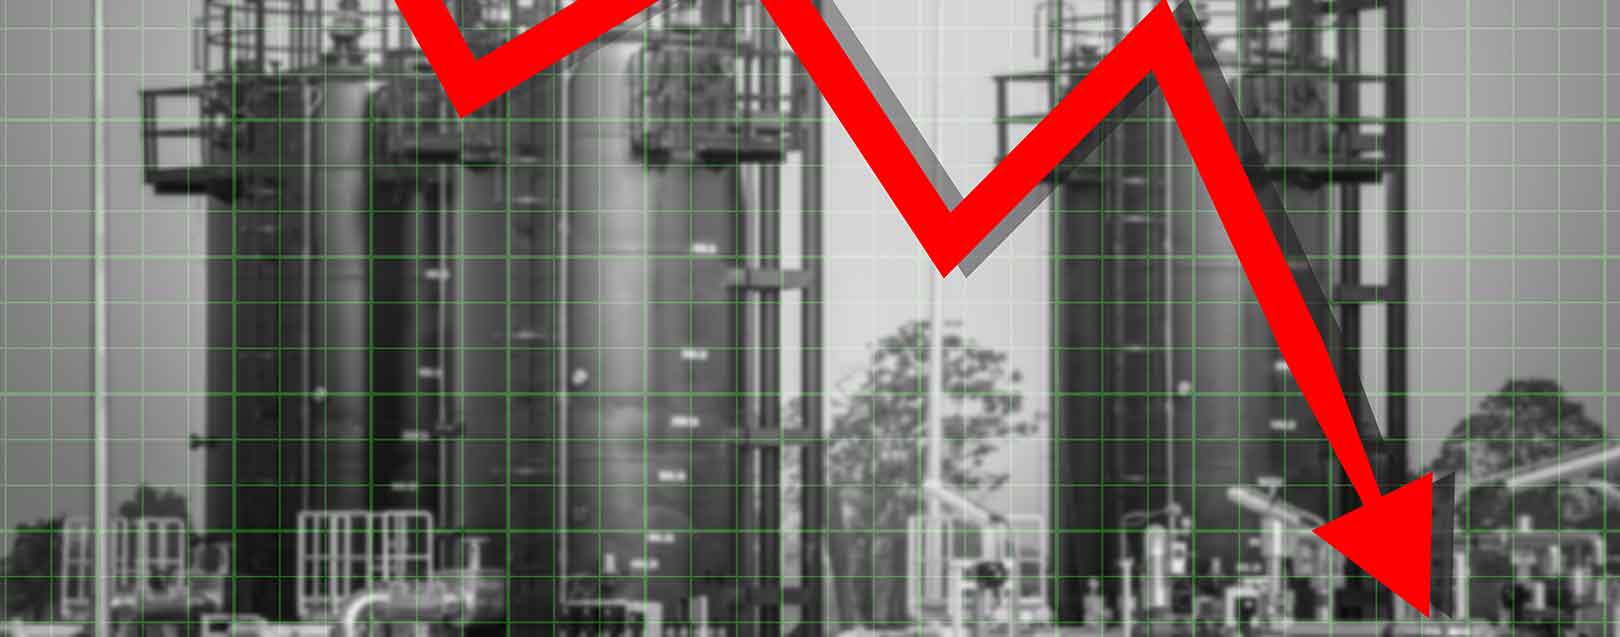 Stocks fall worldwide on oil price drop